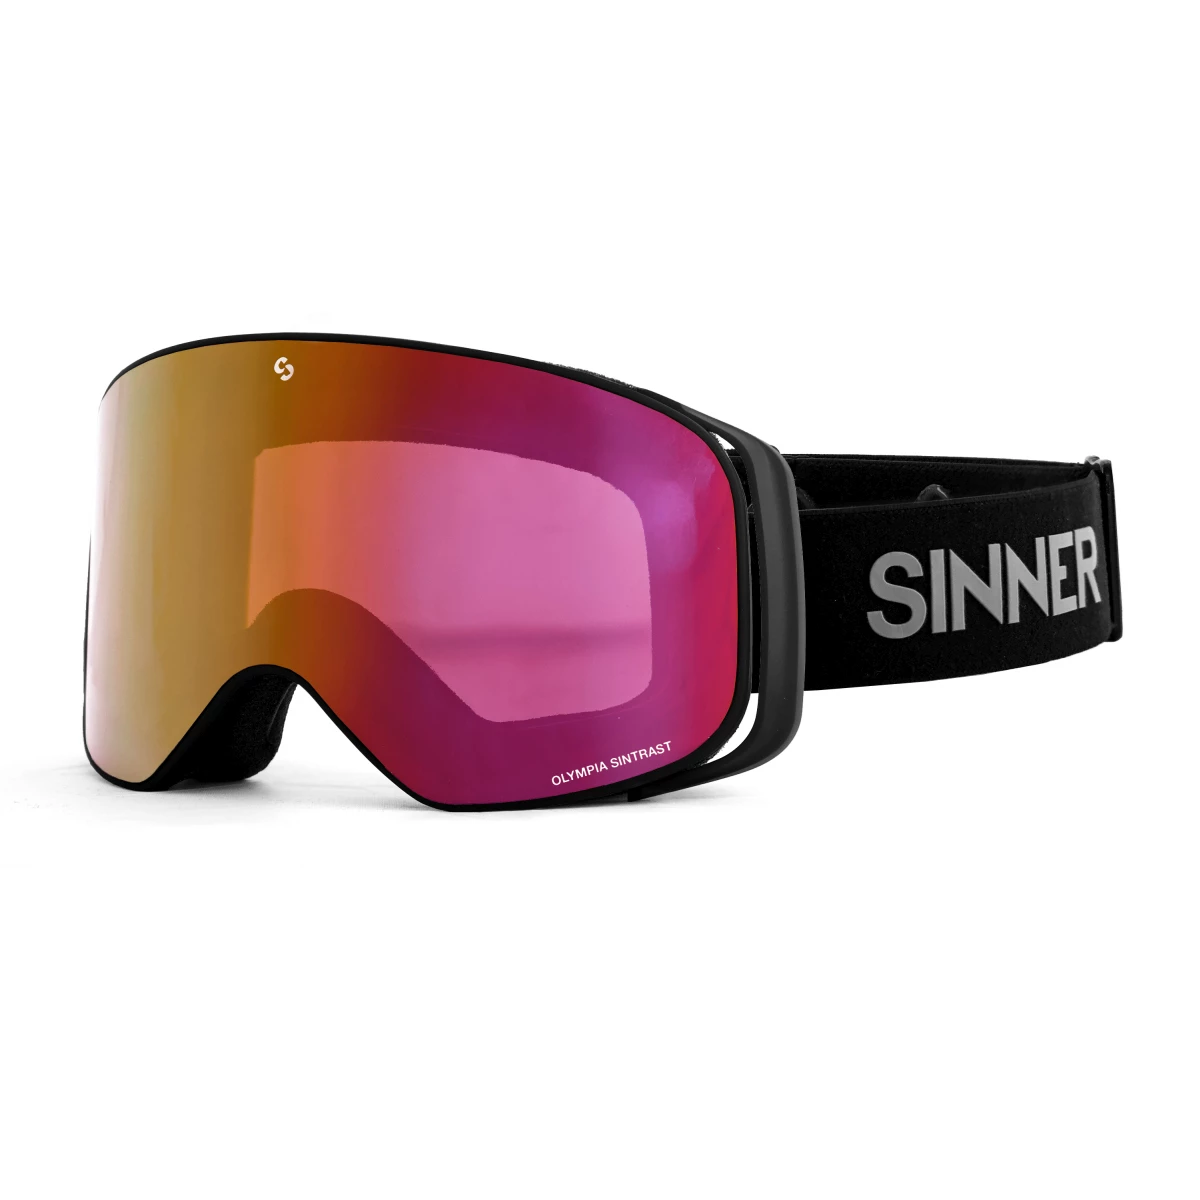 Mannelijkheid Vlek Omzet Sinner Olympia + Skibril - Goggles - Accessoires - Wintersport - Intersport  van den Broek / Biggelaar